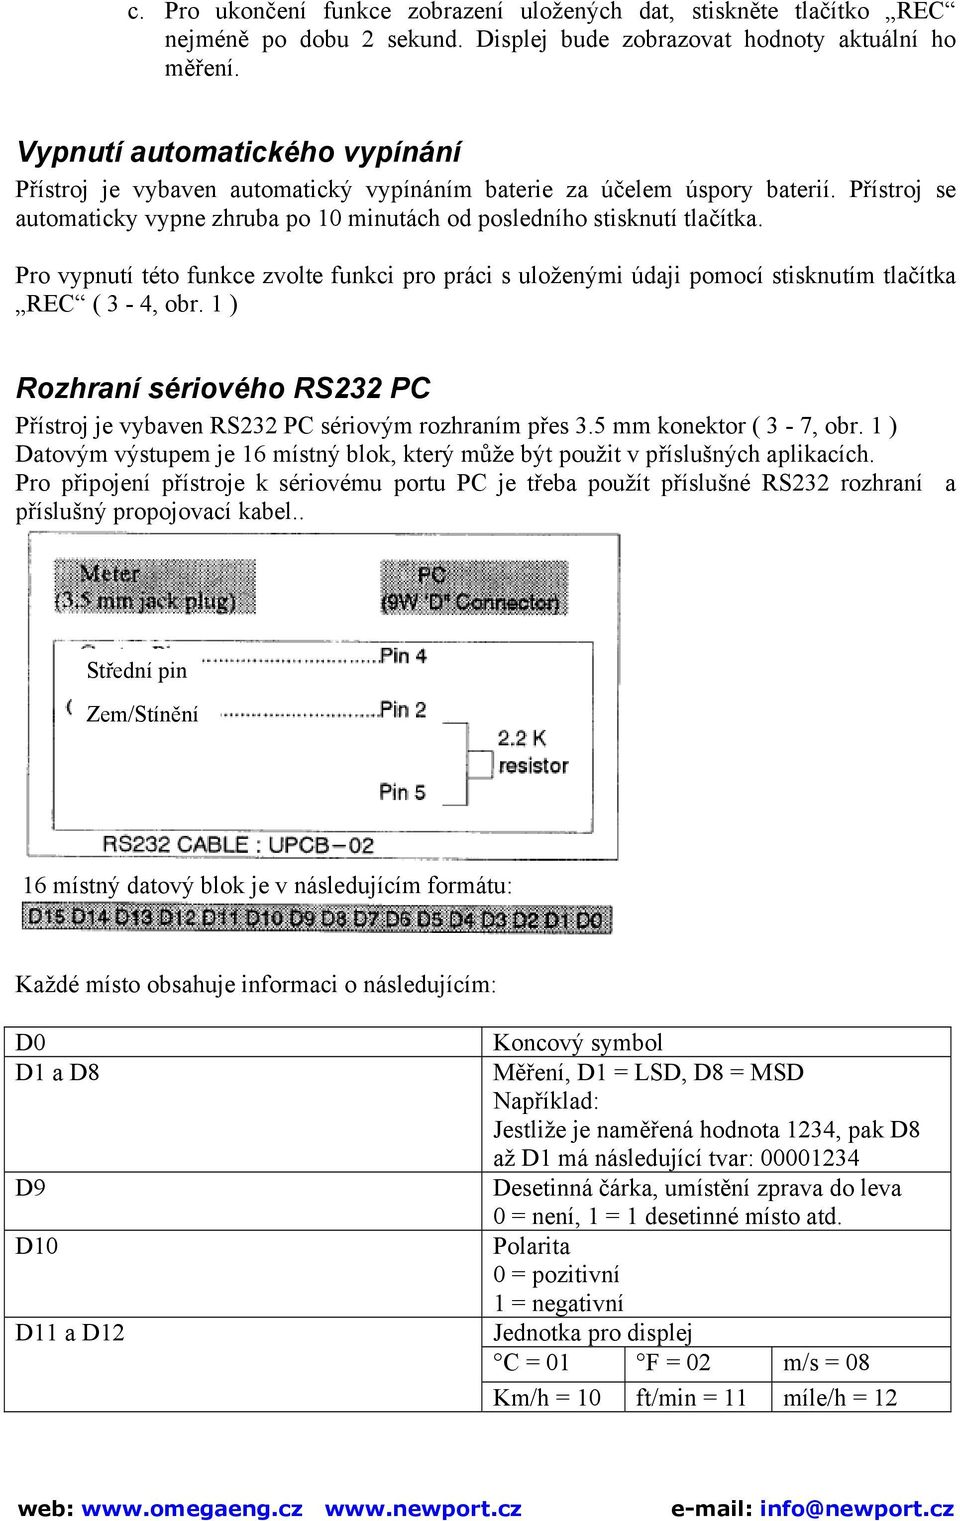 Pro vypnutí této funkce zvolte funkci pro práci s uloženými údaji pomocí stisknutím tlačítka REC ( 3-4, obr. 1 ) Rozhraní sériového RS232 PC Přístroj je vybaven RS232 PC sériovým rozhraním přes 3.